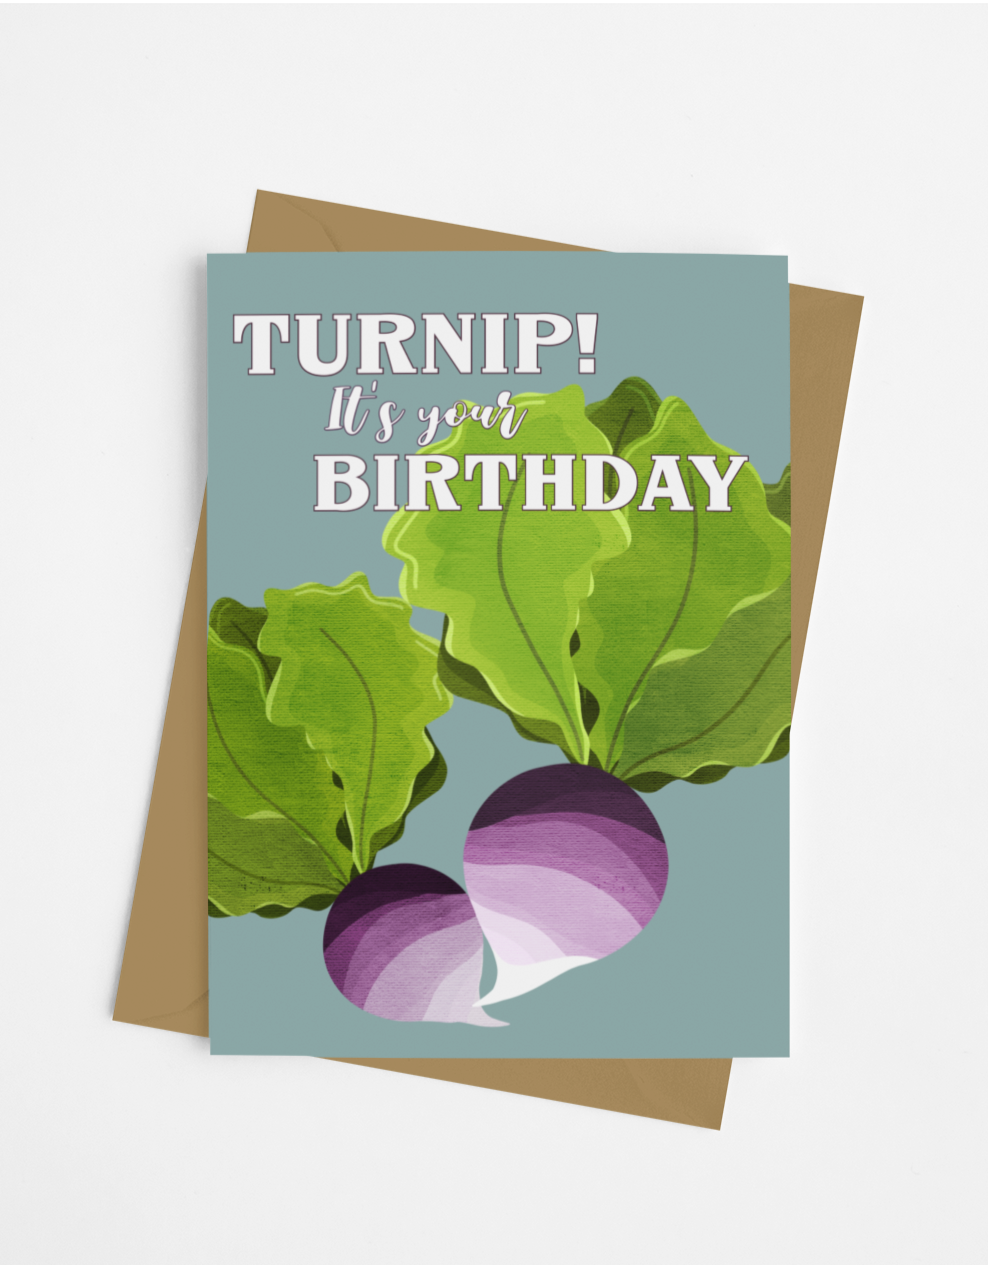 Turnip birthday card